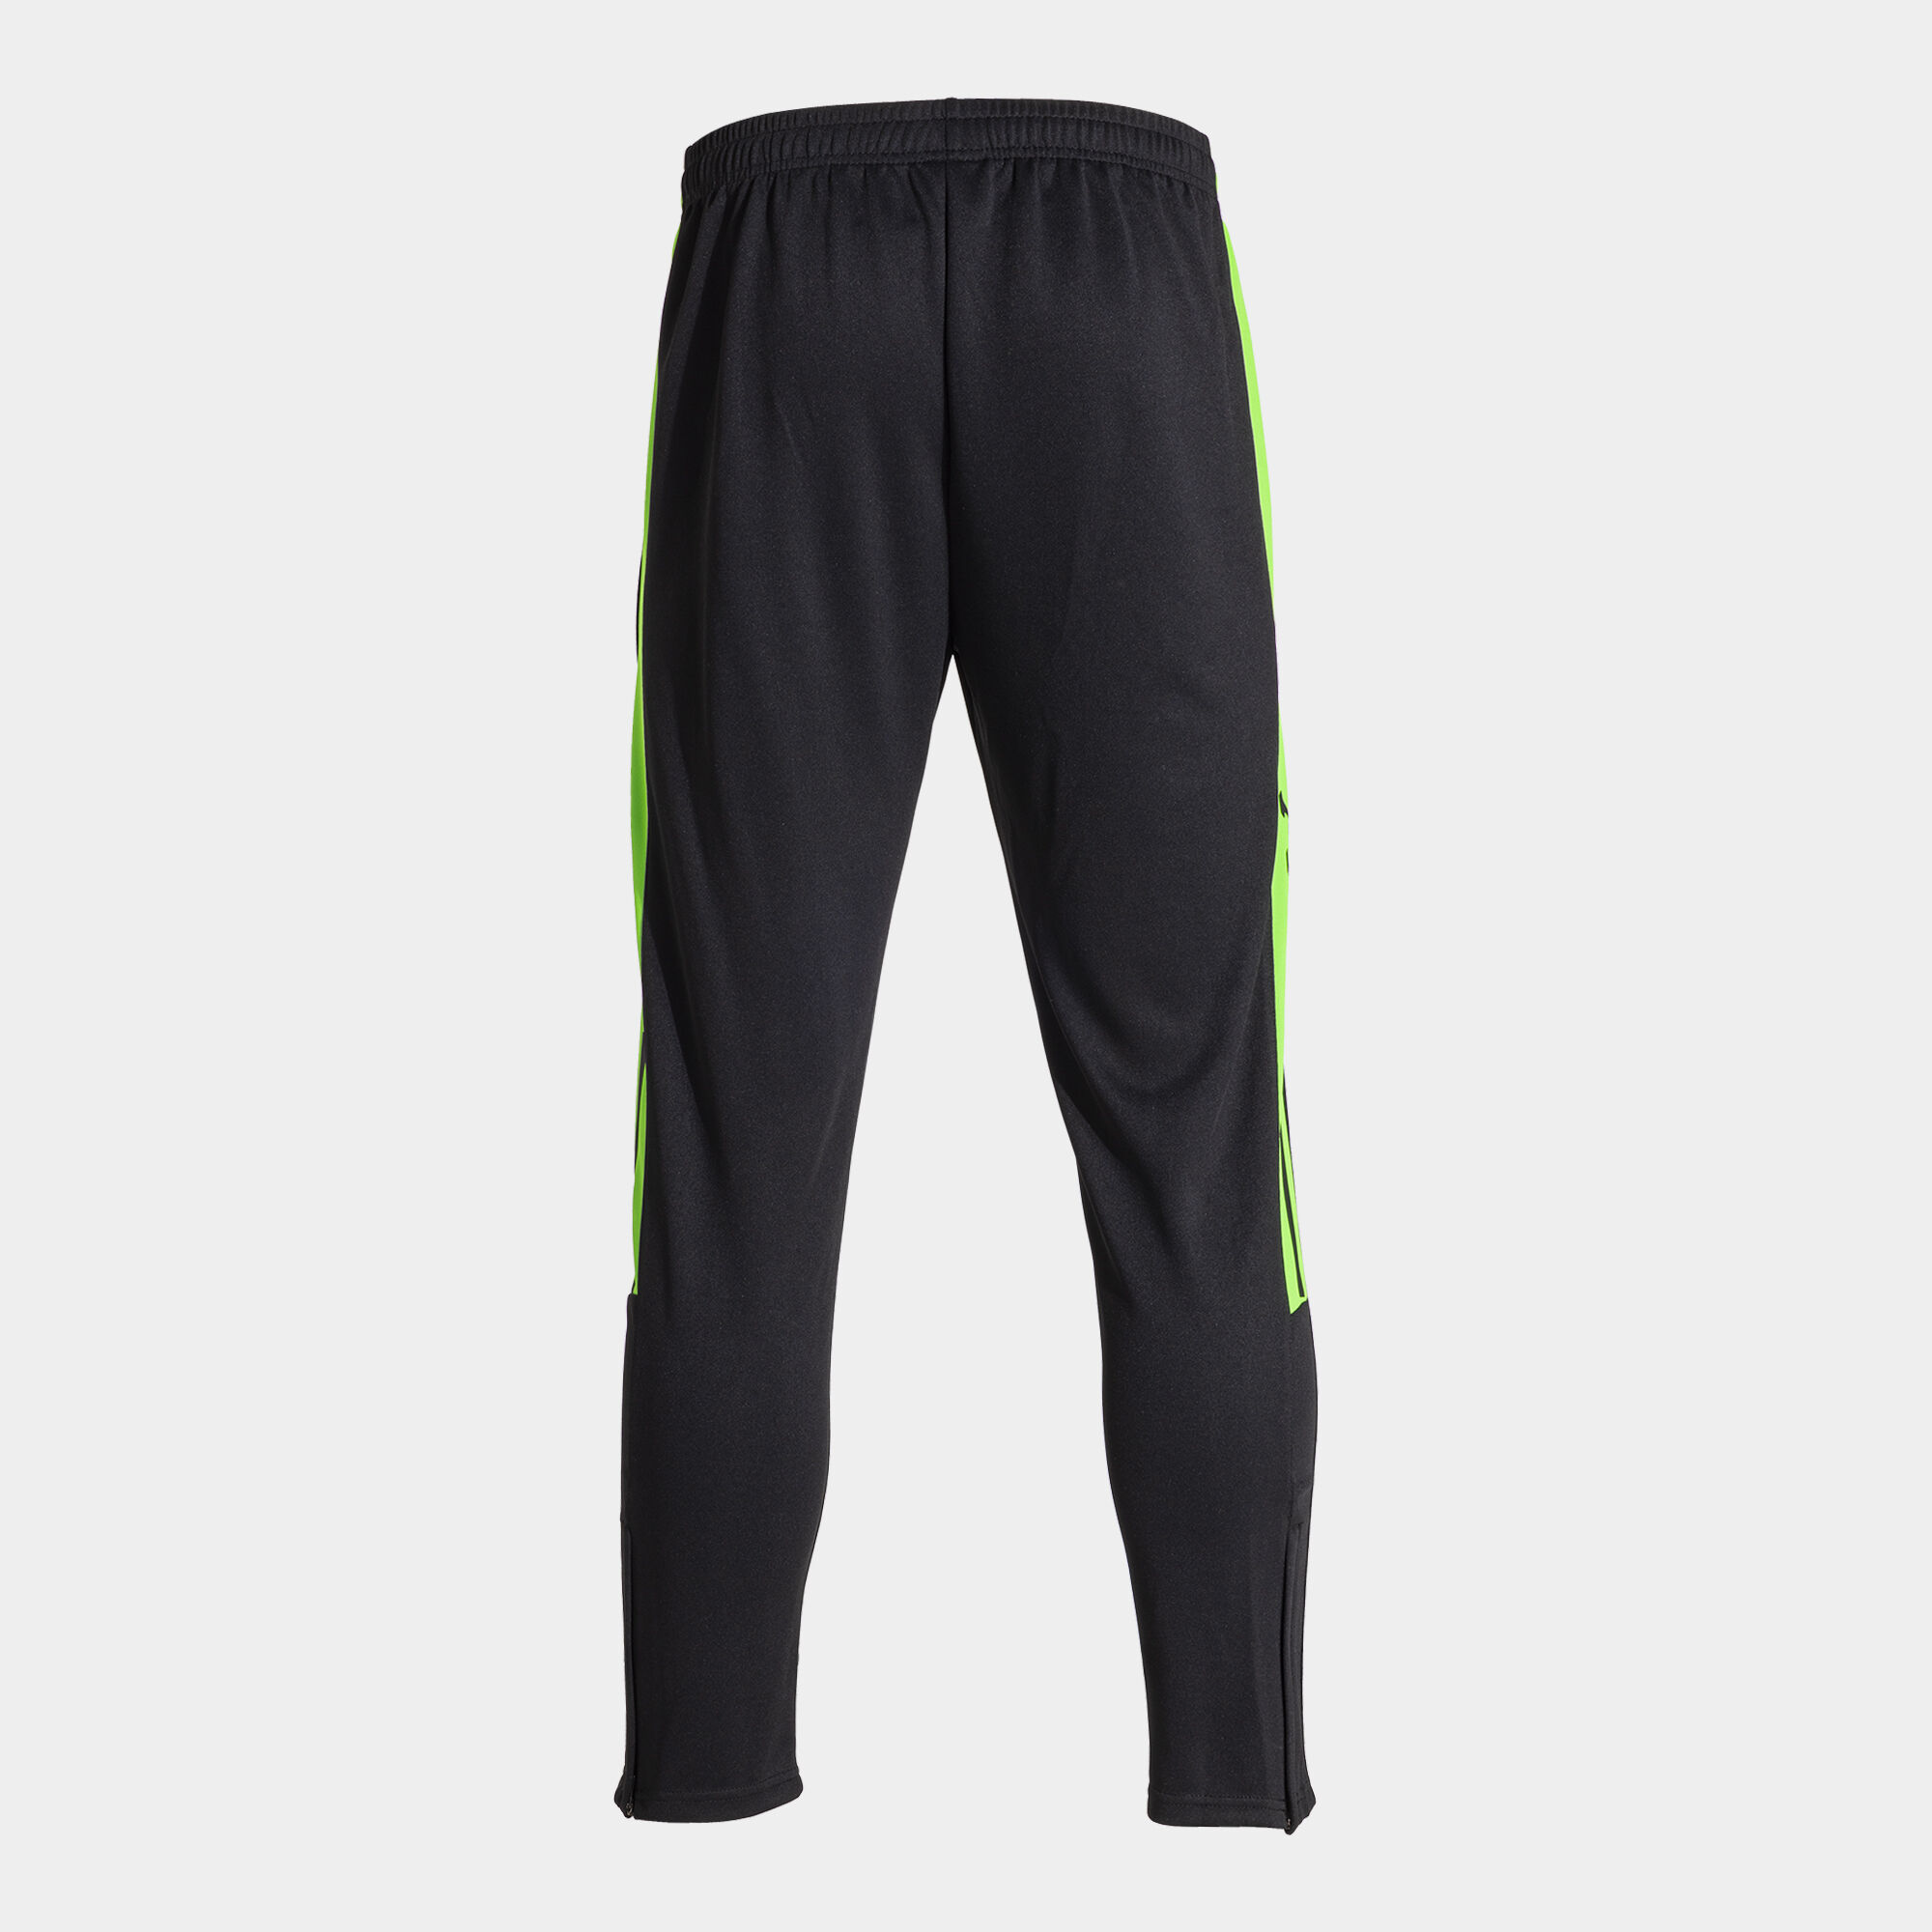 Calça comprida homem Olimpiada preto verde fluorescente